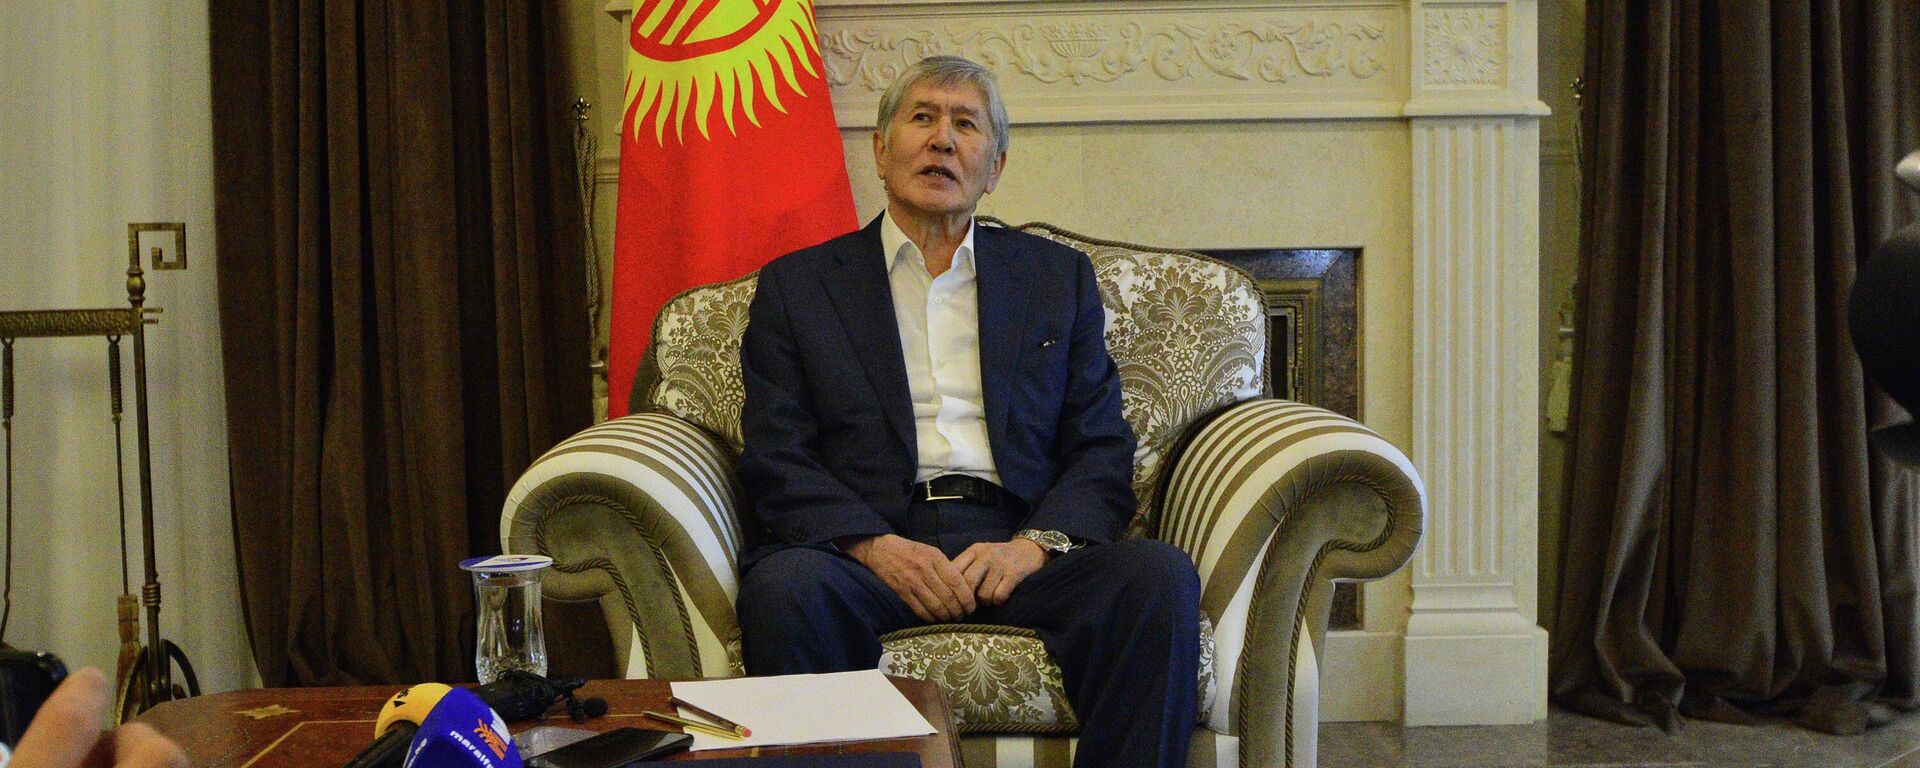 Бывший президент Кыргызстана Алмазбек Атамбаев в своем доме в селе Кой-Тай после освобождения от заключения. 14 февраля 2023 года - Sputnik Кыргызстан, 1920, 15.02.2023